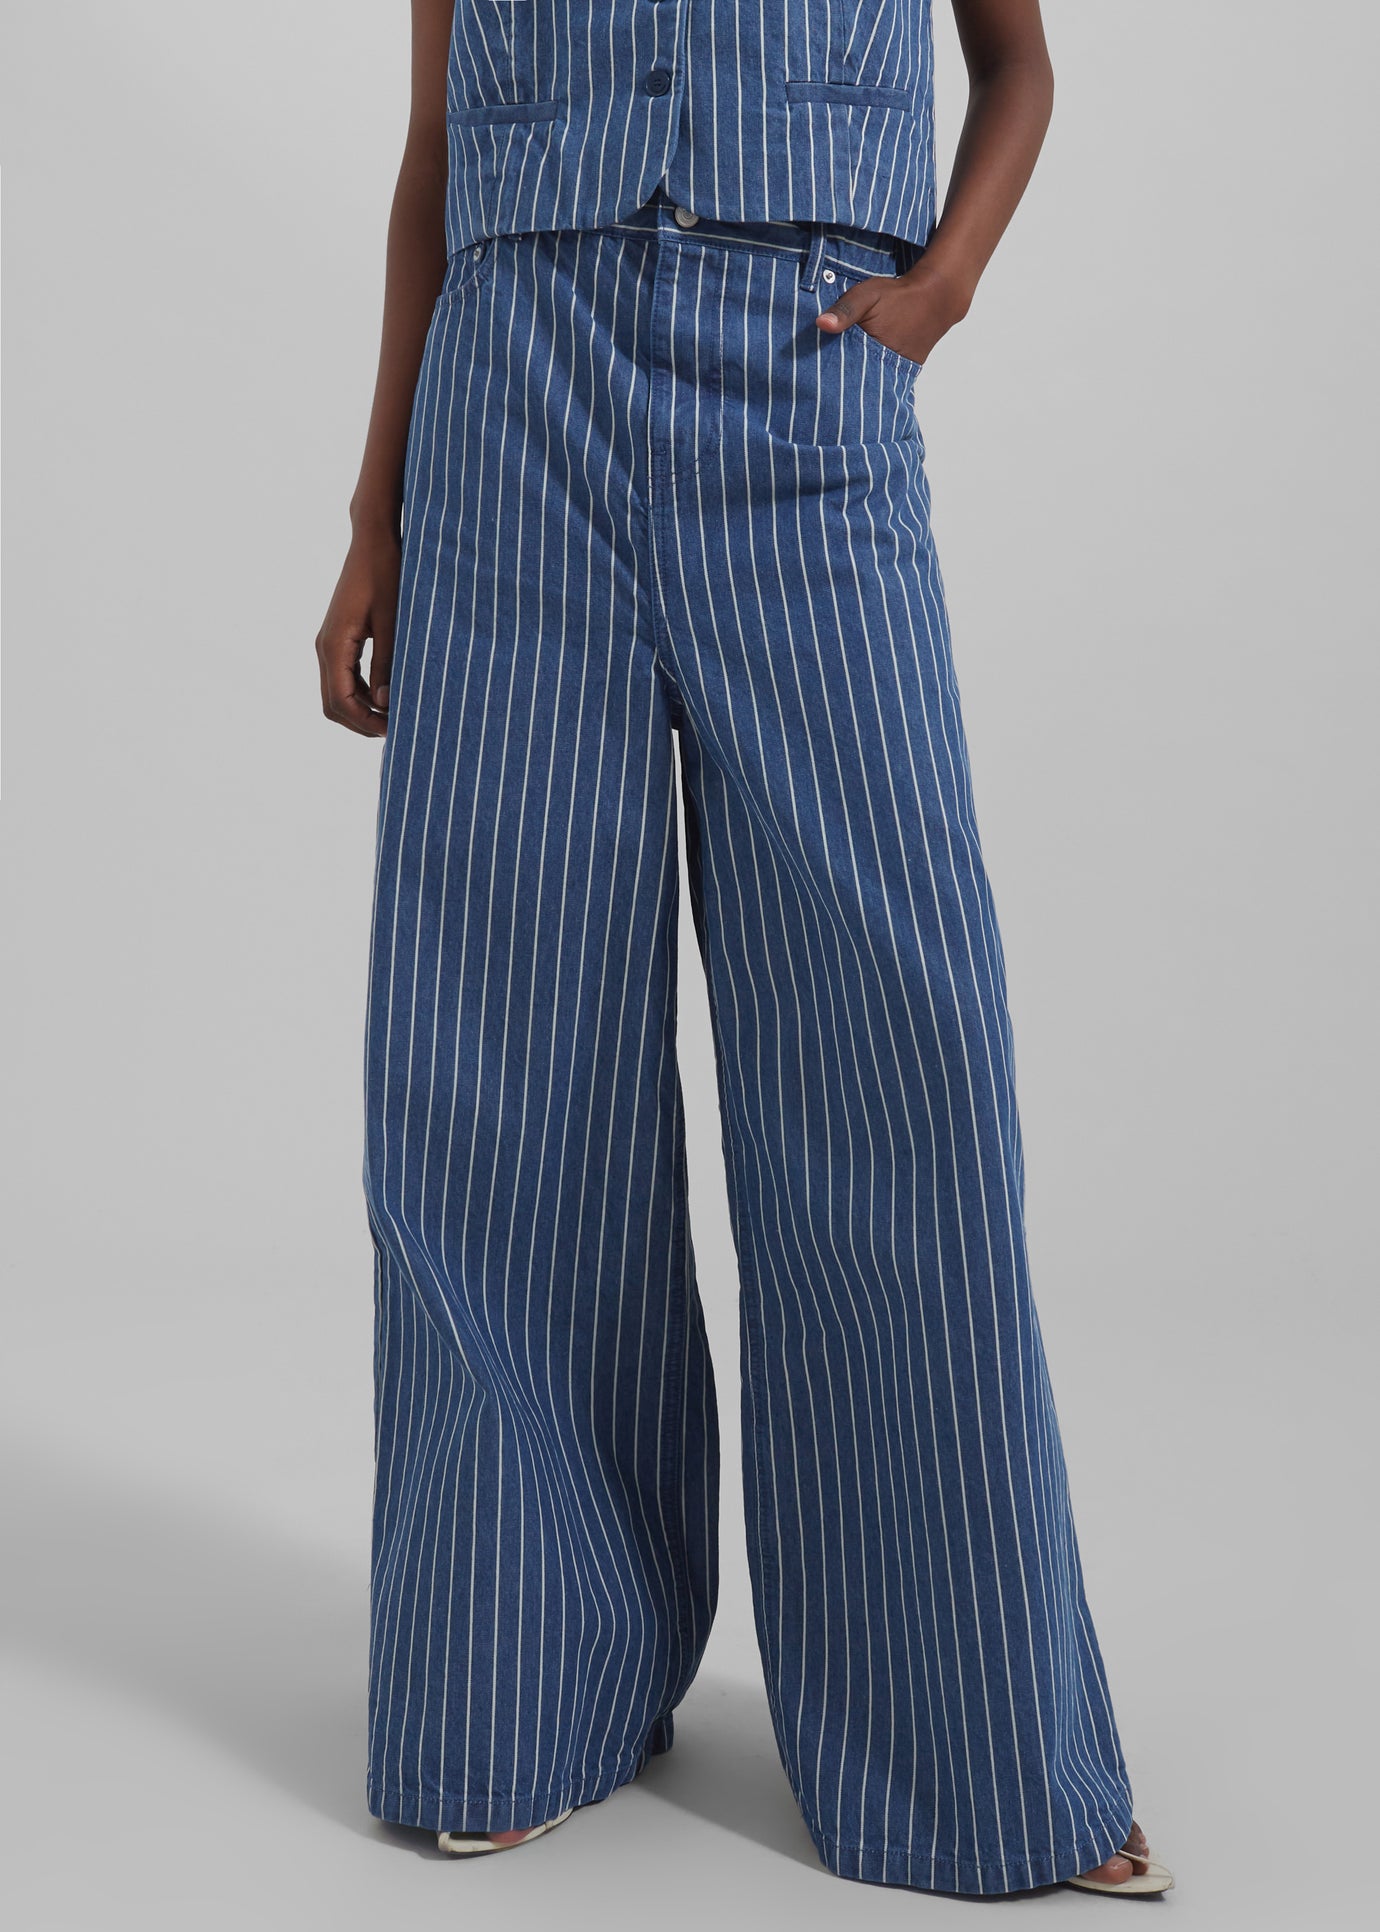 Sasha Wide Leg Jeans - Blue/White Stripe